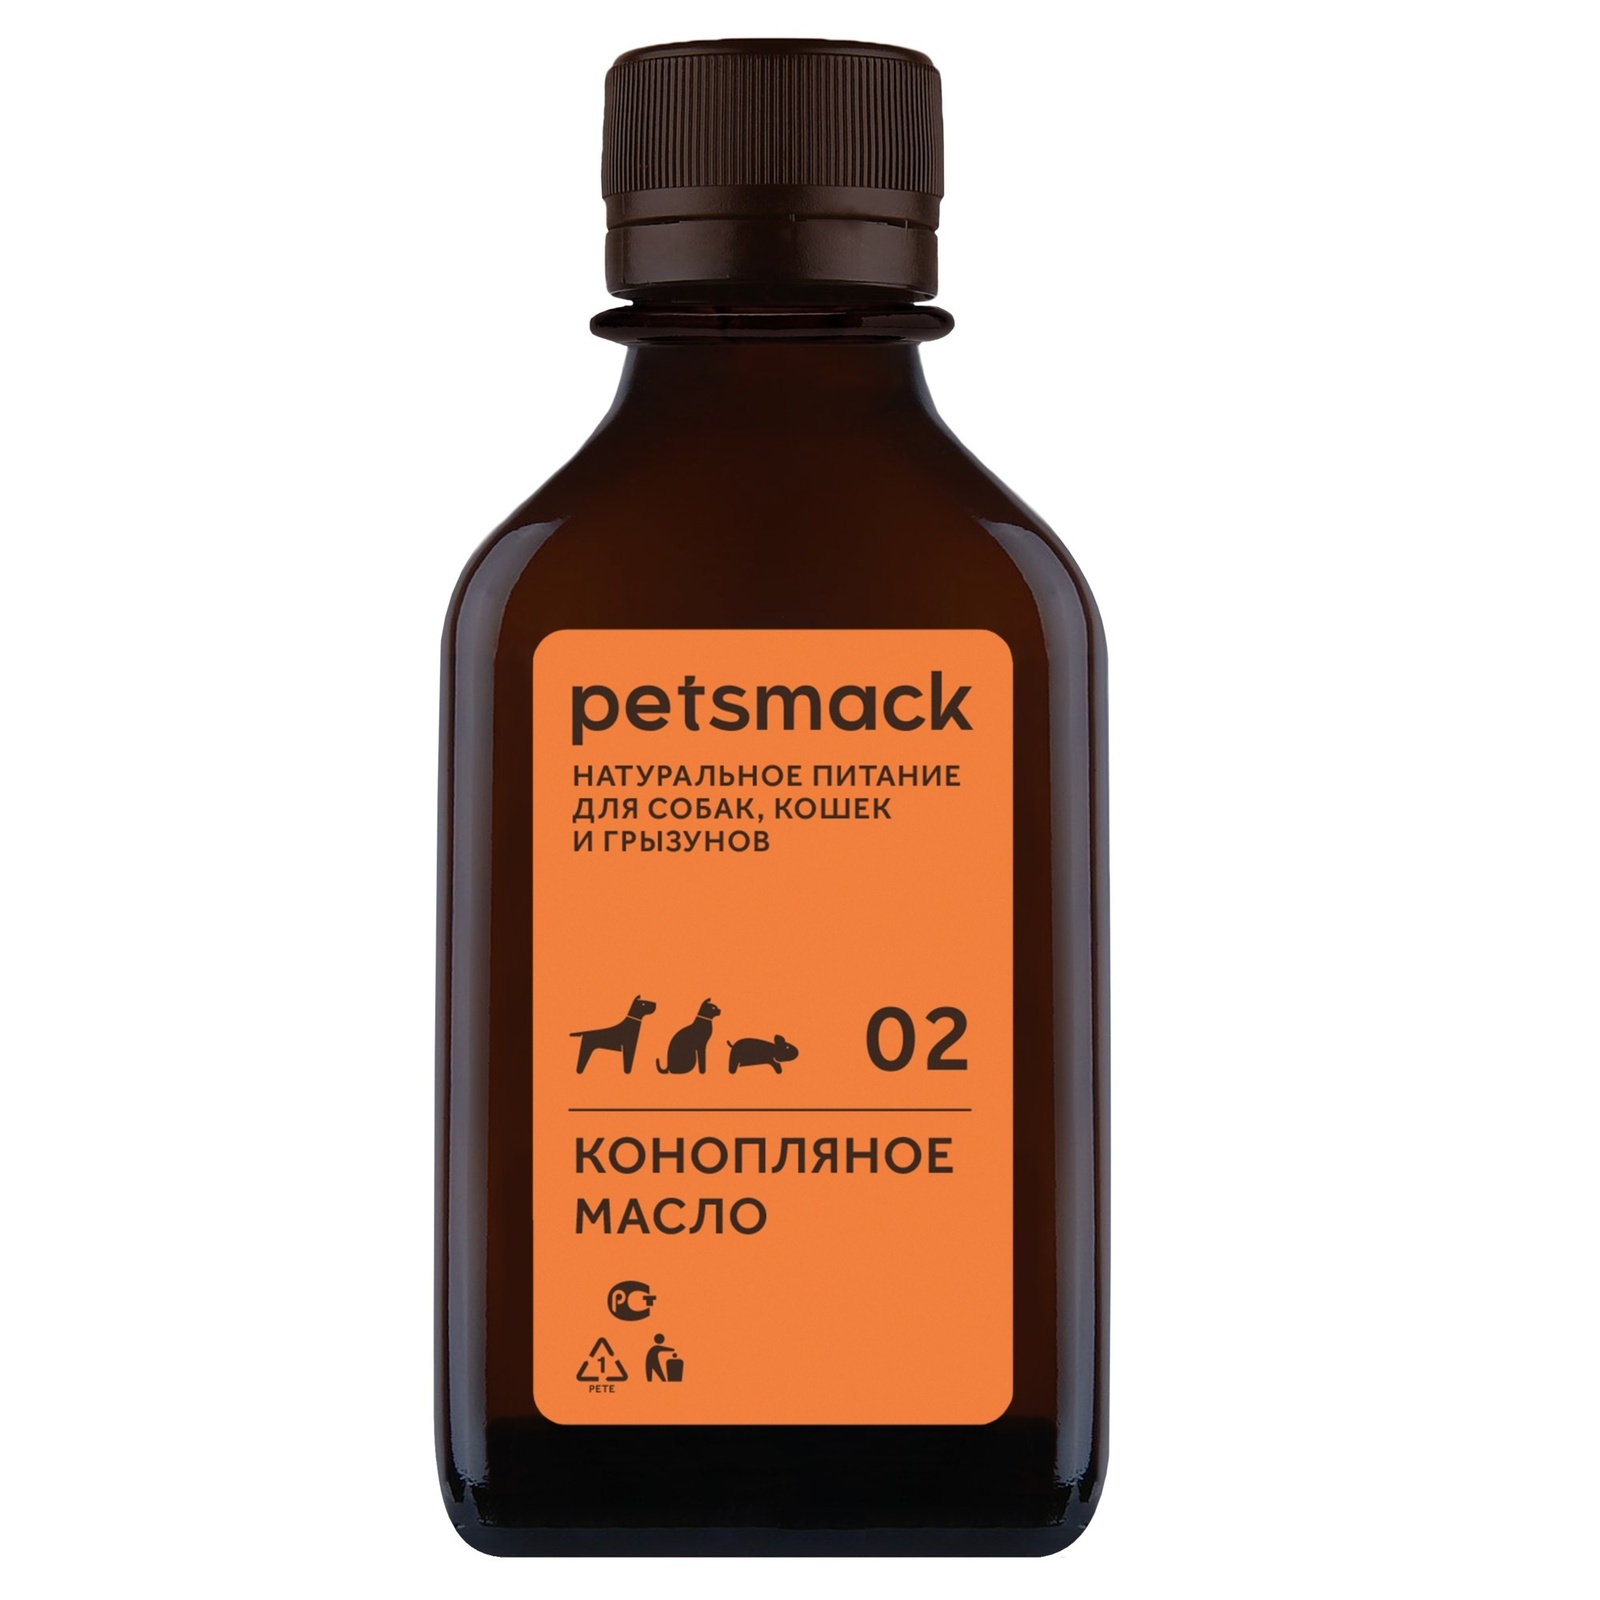 Petsmack лакомства Petsmack лакомства конопляное масло (250 г) petsmack petsmack бульон из индейки 260 г